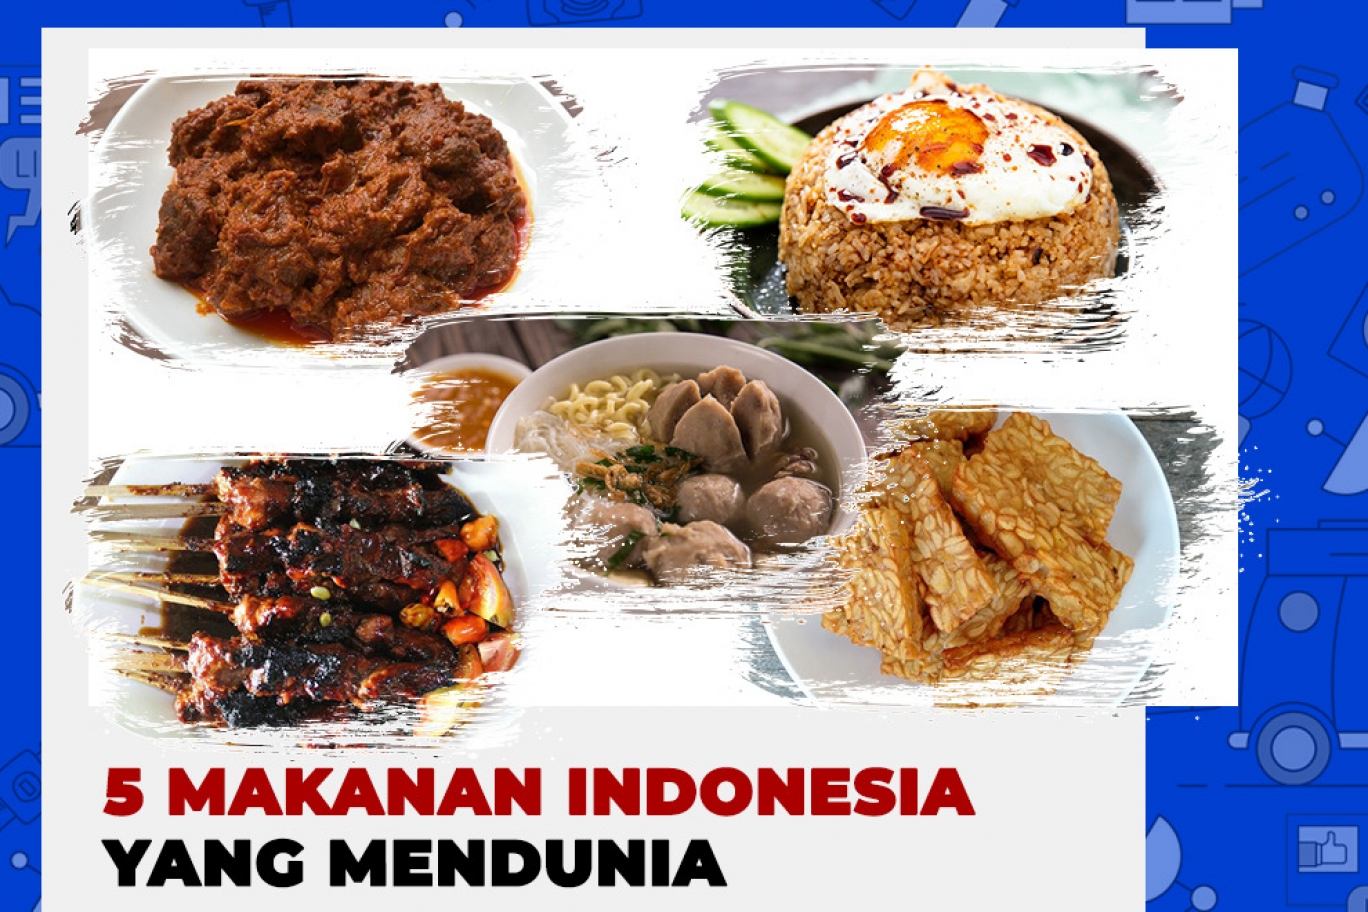 TRANS7 | 5 Makanan Indonesia Yang Mendunia